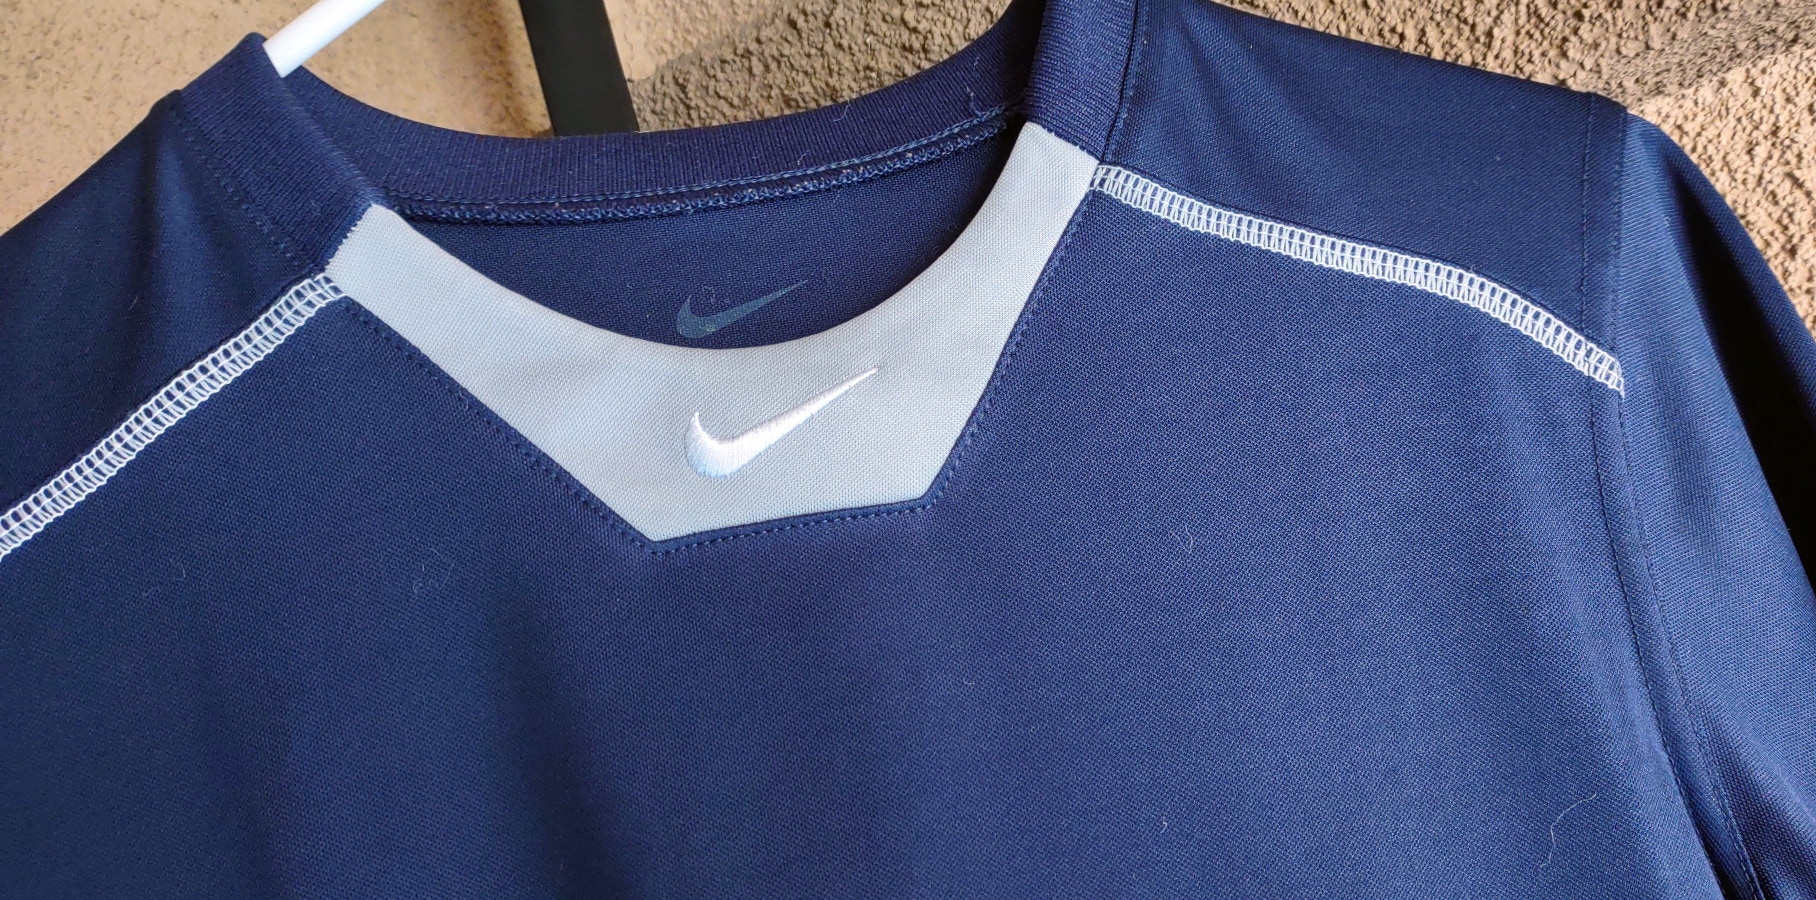 Blue Adult Unisex New Large Nike Shirt